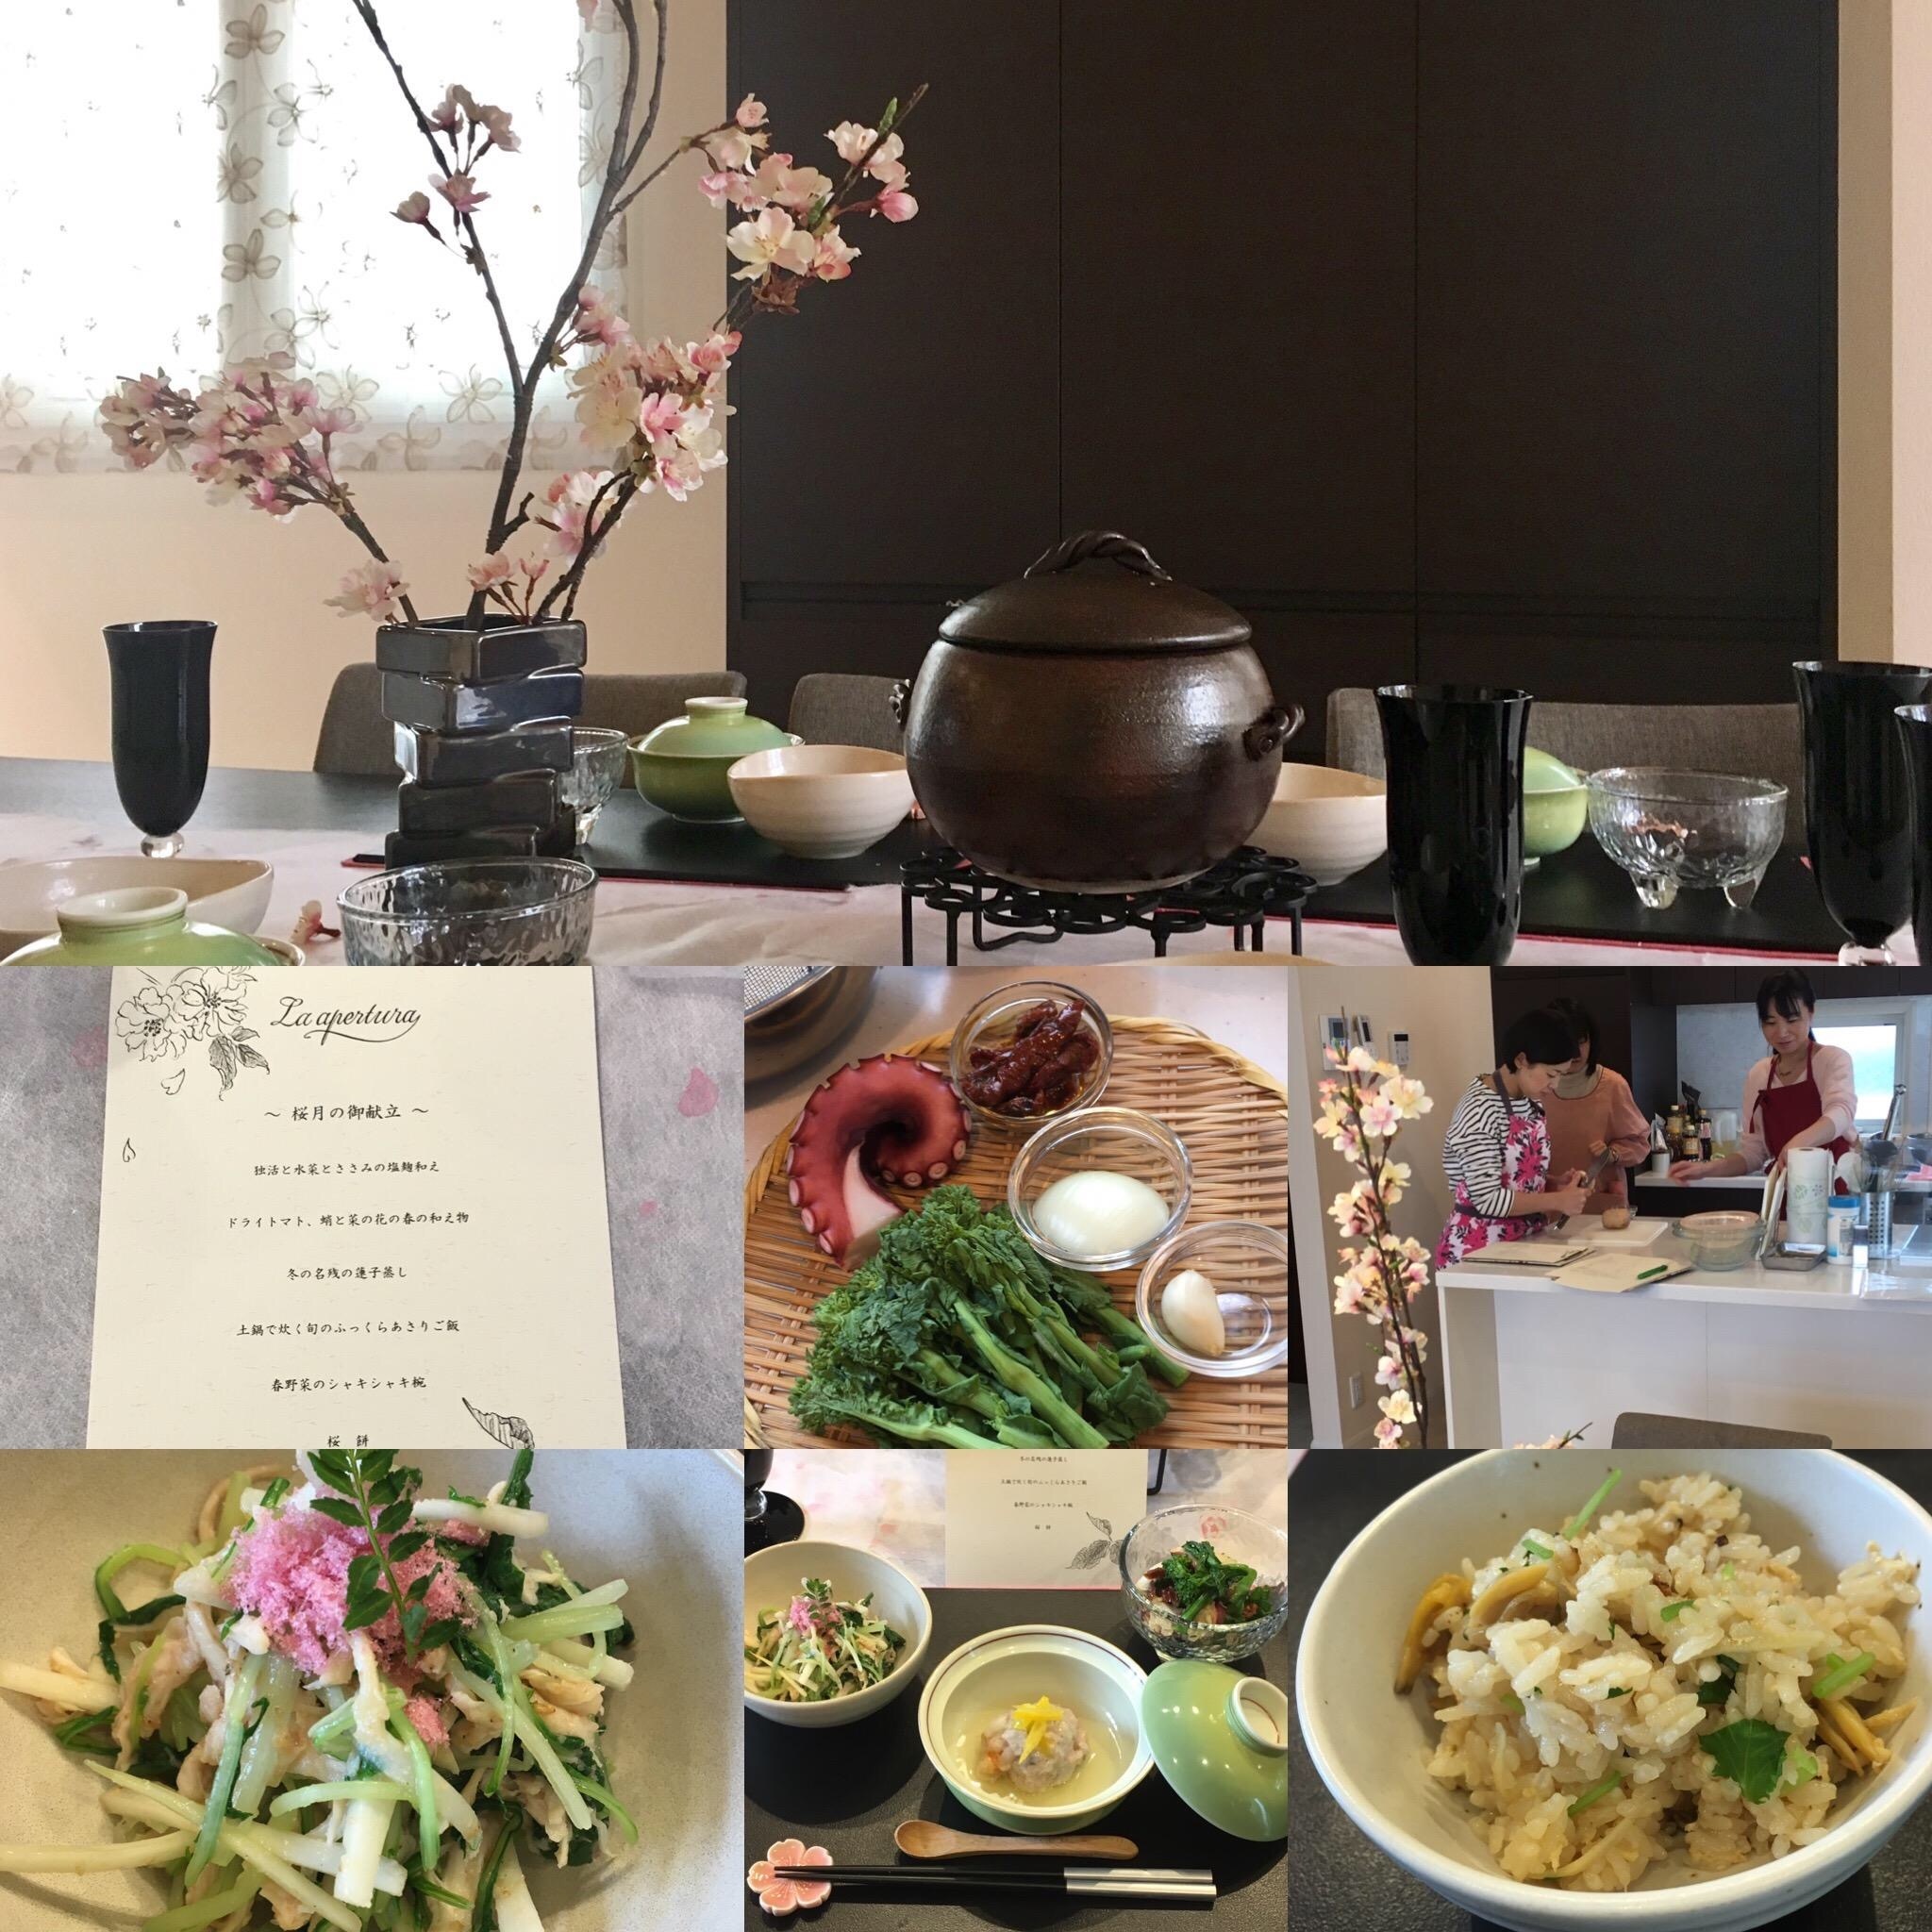 桜月の和食おもてなしレッスン 春の食材使います 開催 La Apertura 東京都大田区 の年12月レッスン情報 料理教室検索サイト クスパ